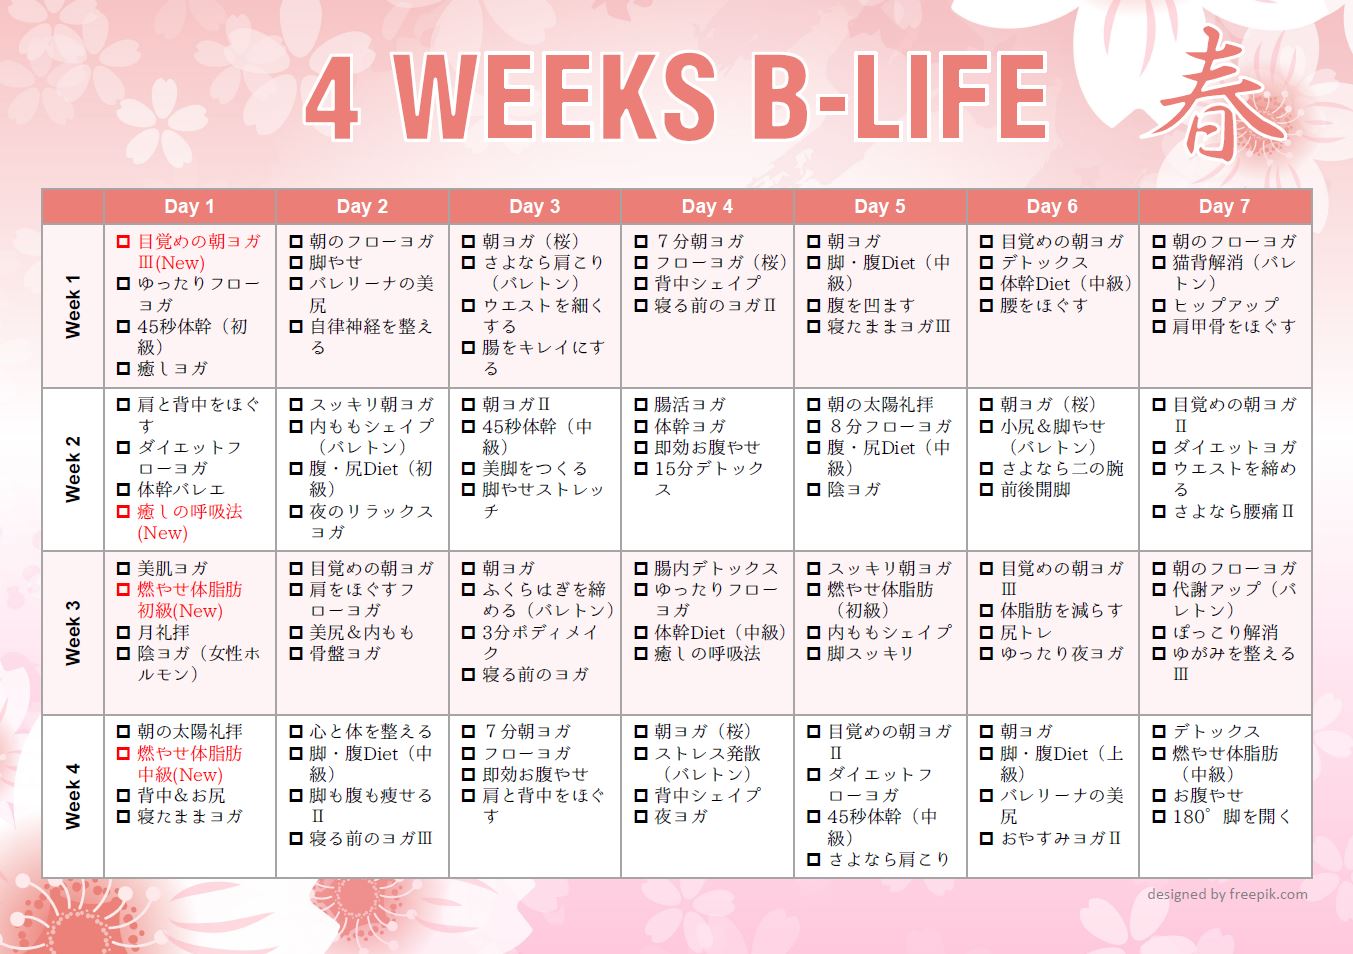 カレンダープログラム 4 Weeks B Life 春 4週間で健康的に引き締める B Life